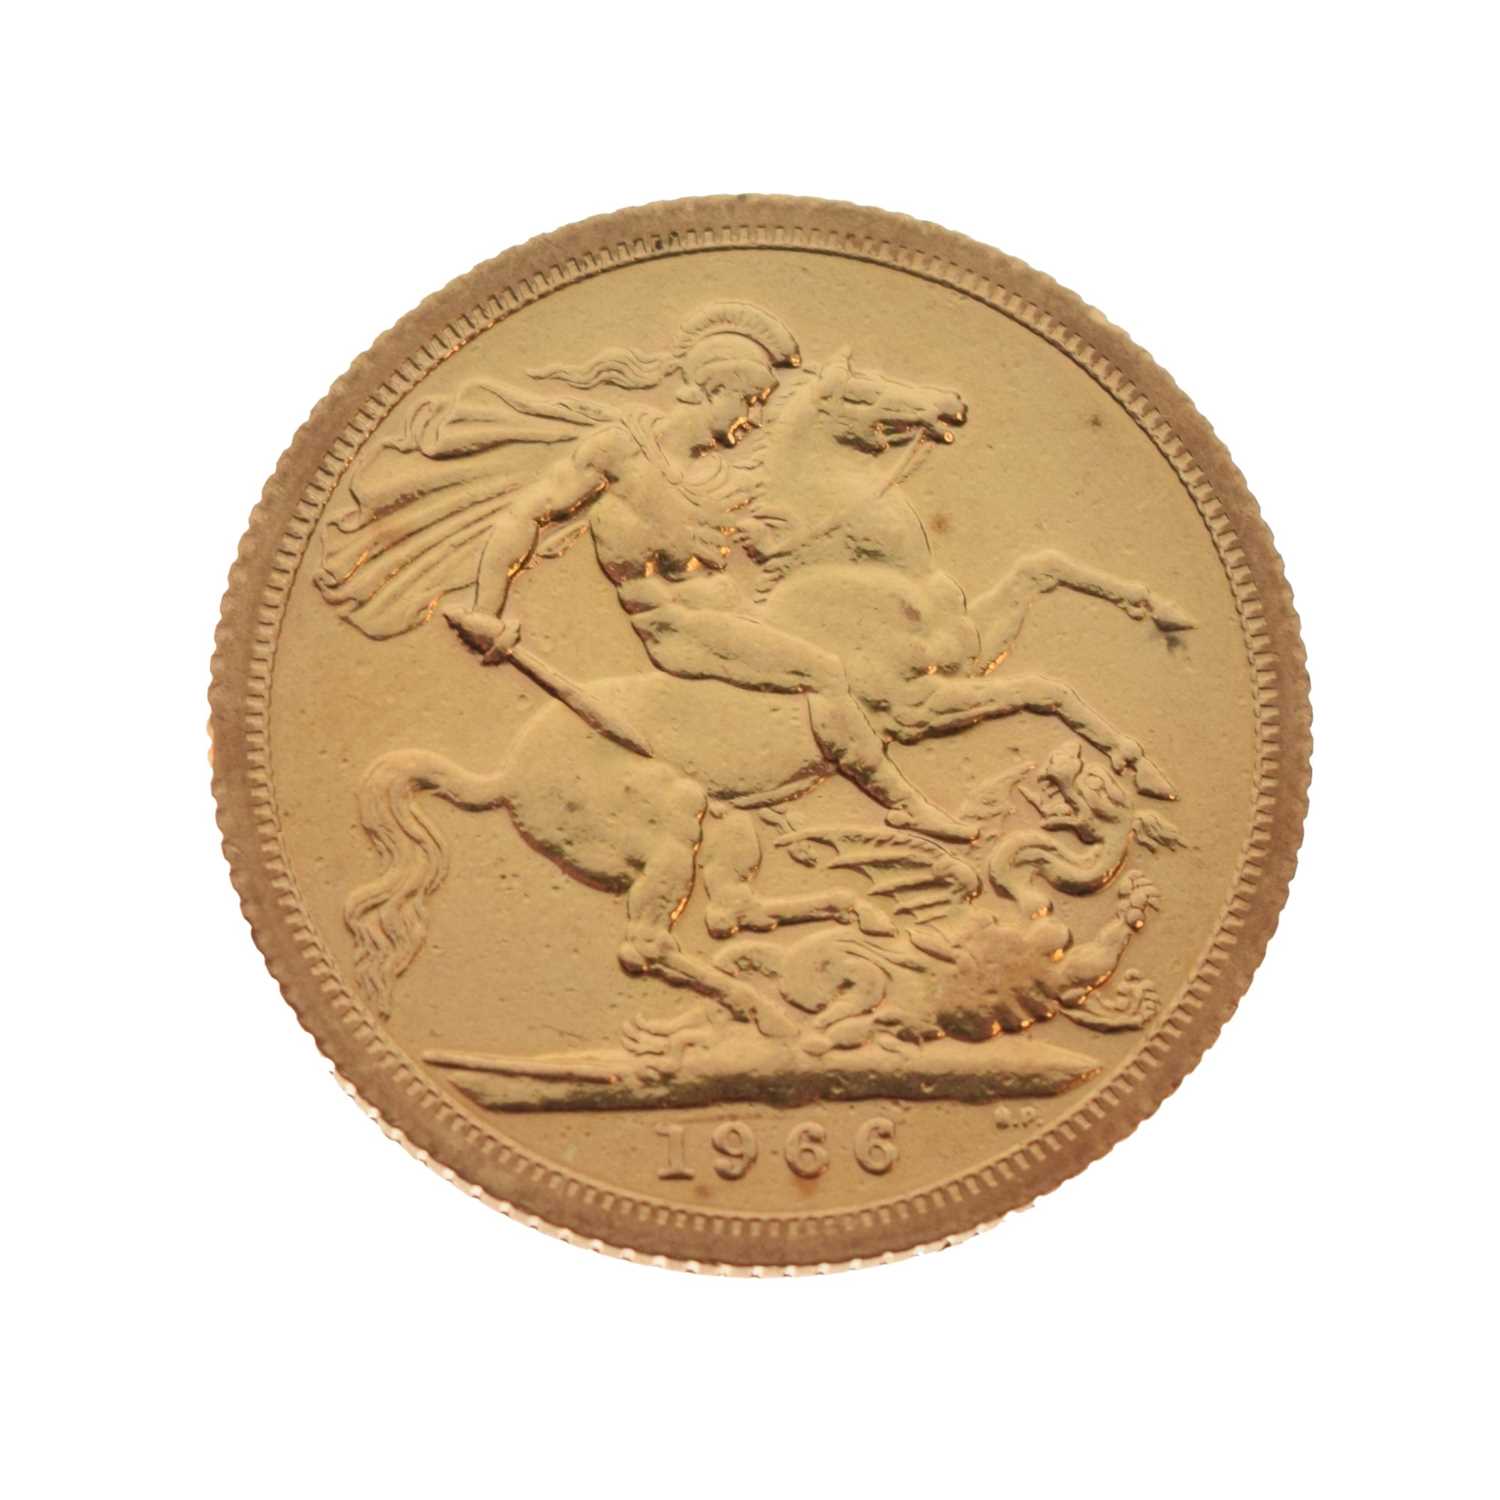 Elizabeth II gold sovereign, 1966